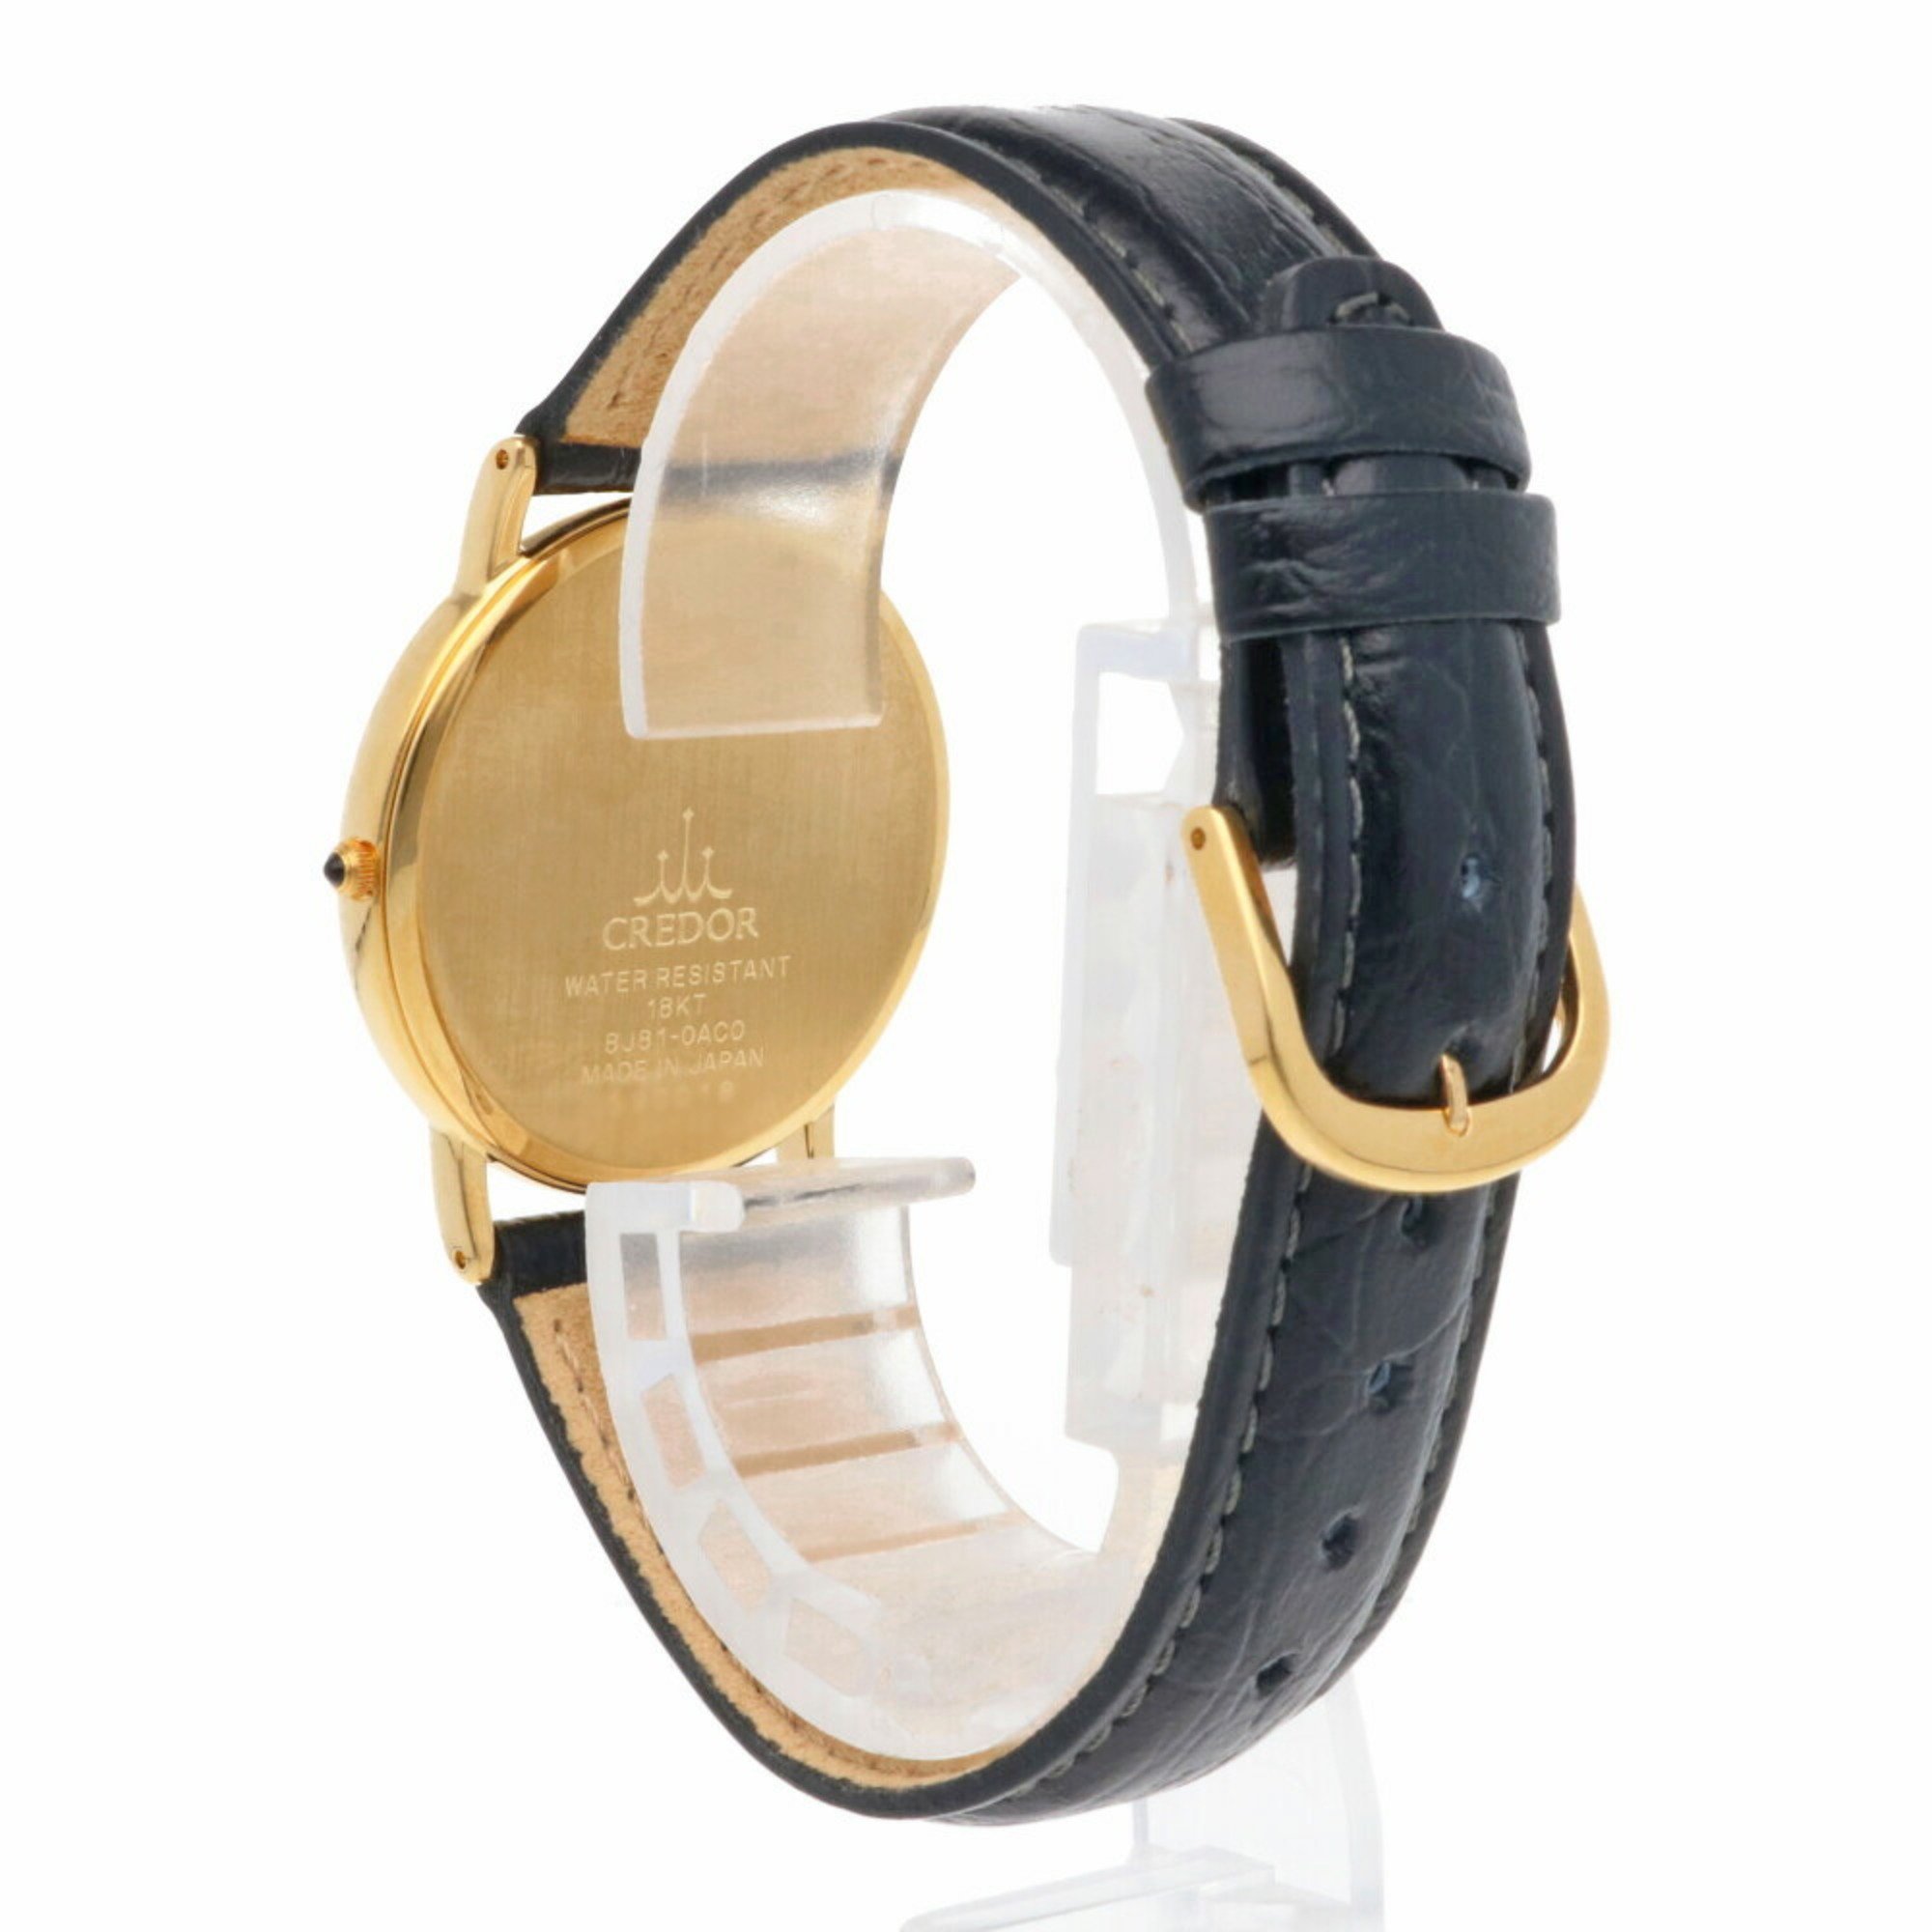 CREDOR SEIKO Wristwatch 18K Gold 8J81-0AC0 Quartz Men's